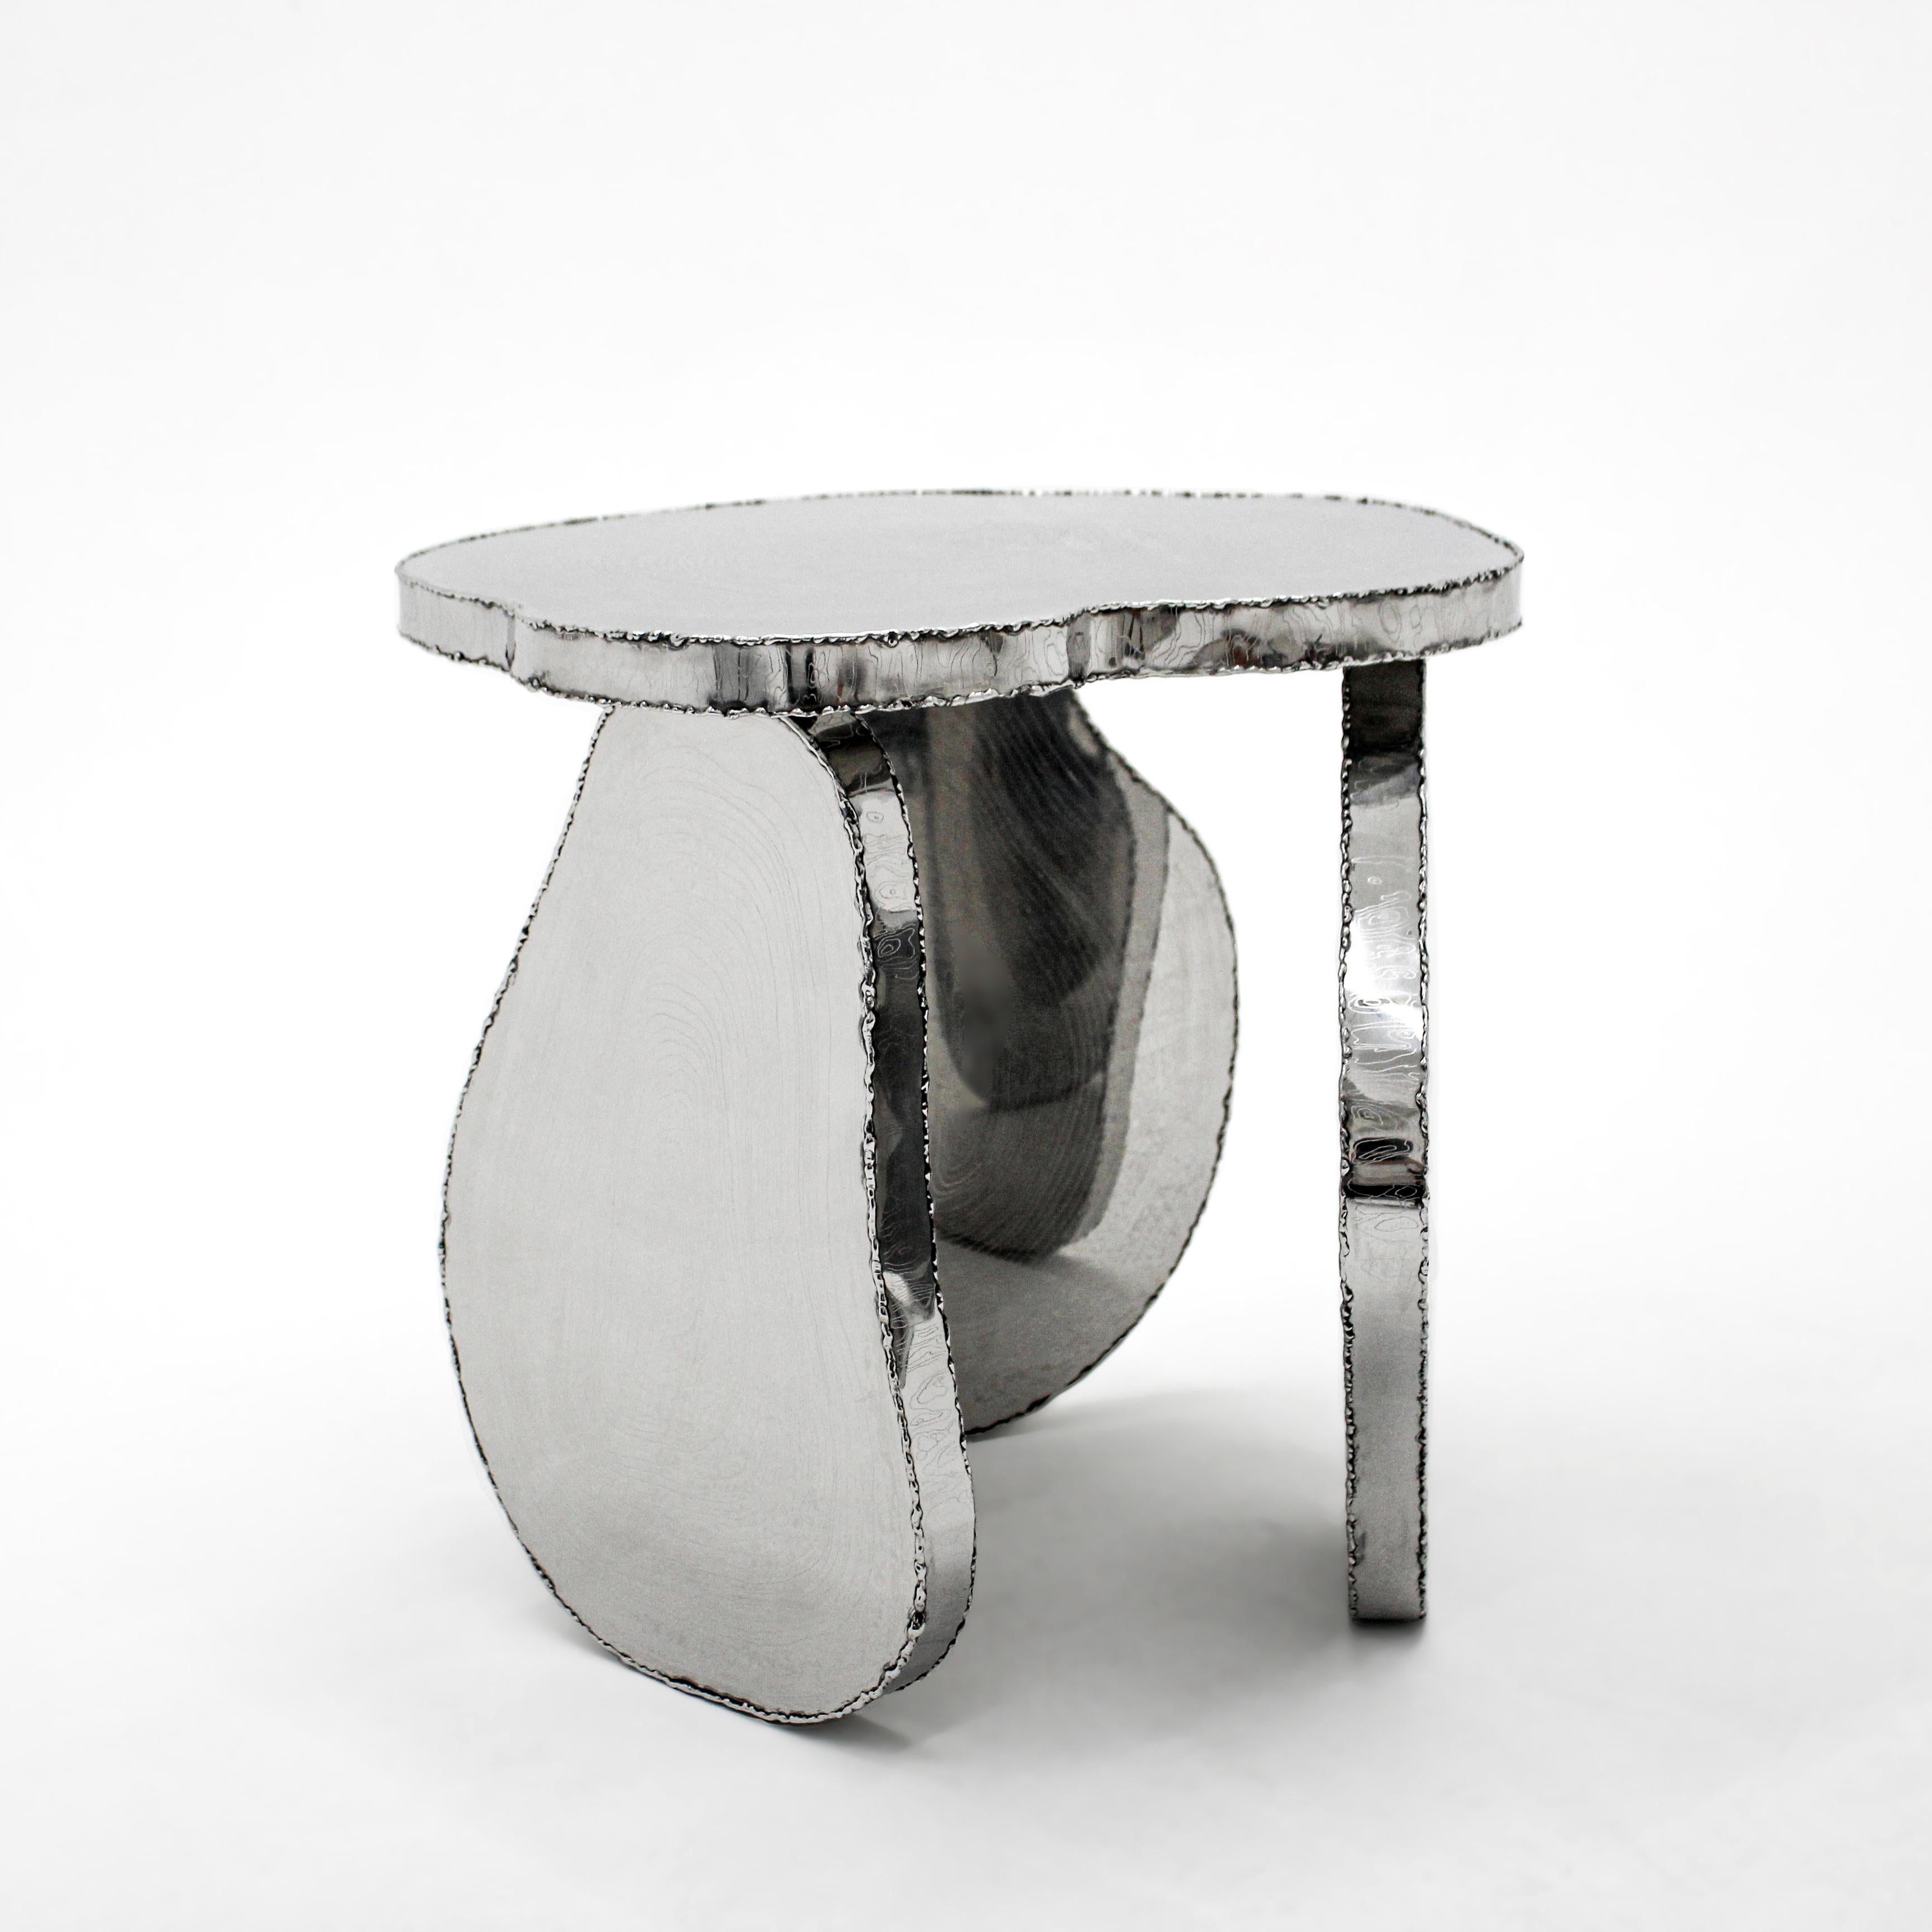 Wood Stack Stool by Hyungjun Lee
Dimensions: D 52 x W 49 x H 43 cm.
Materials: Stainless steel.


Hyungjun Lee

EDUCATION
2015-2018     ESAD Orléans / Objet & Espace
                      École supérieure d'art de design d’Orléans /